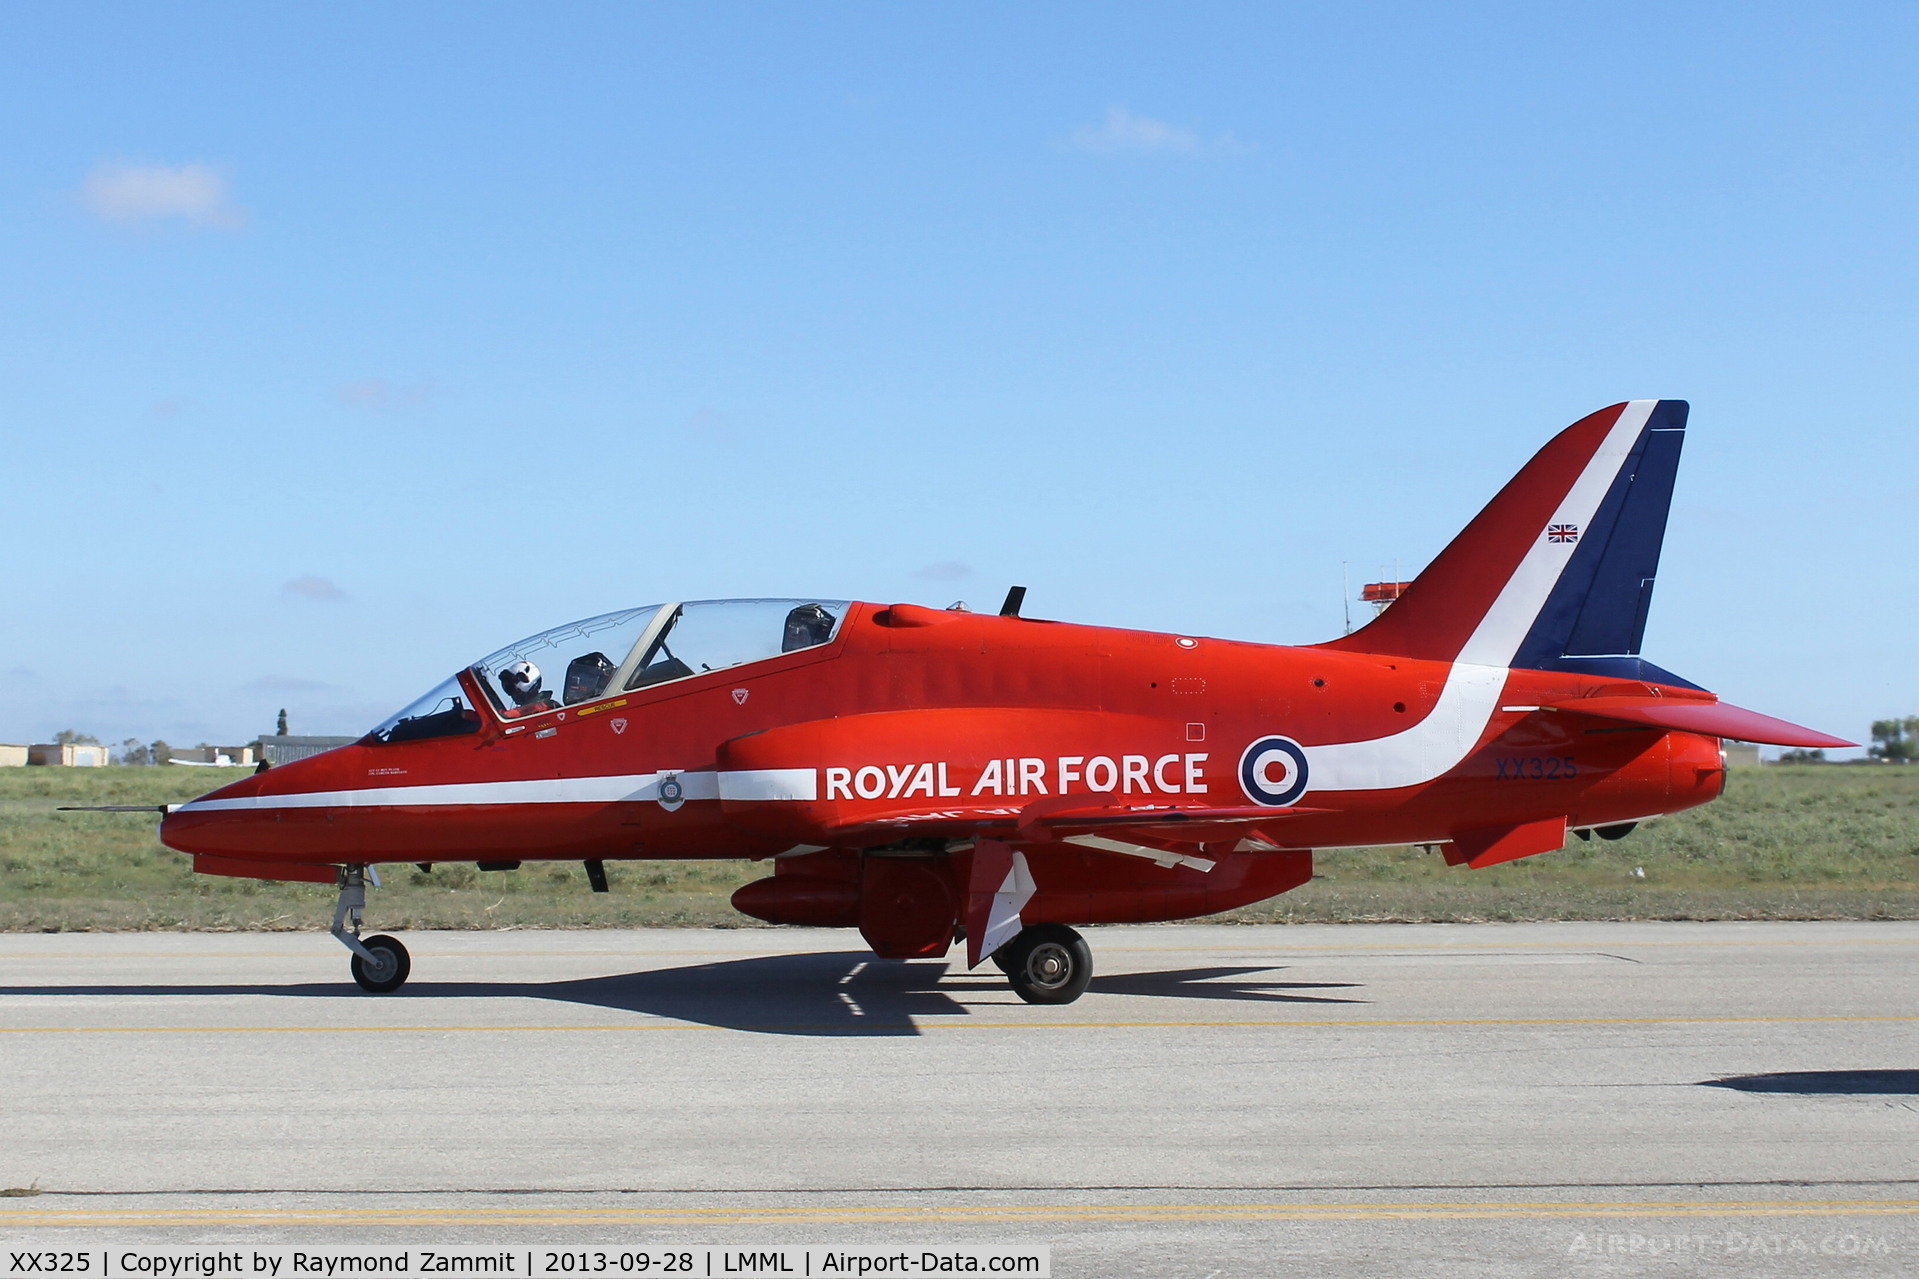 XX325, 1980 Hawker Siddeley Hawk T.1 C/N 169/312150, Hawk XX325 Red Arrows RAF 28Sep13.